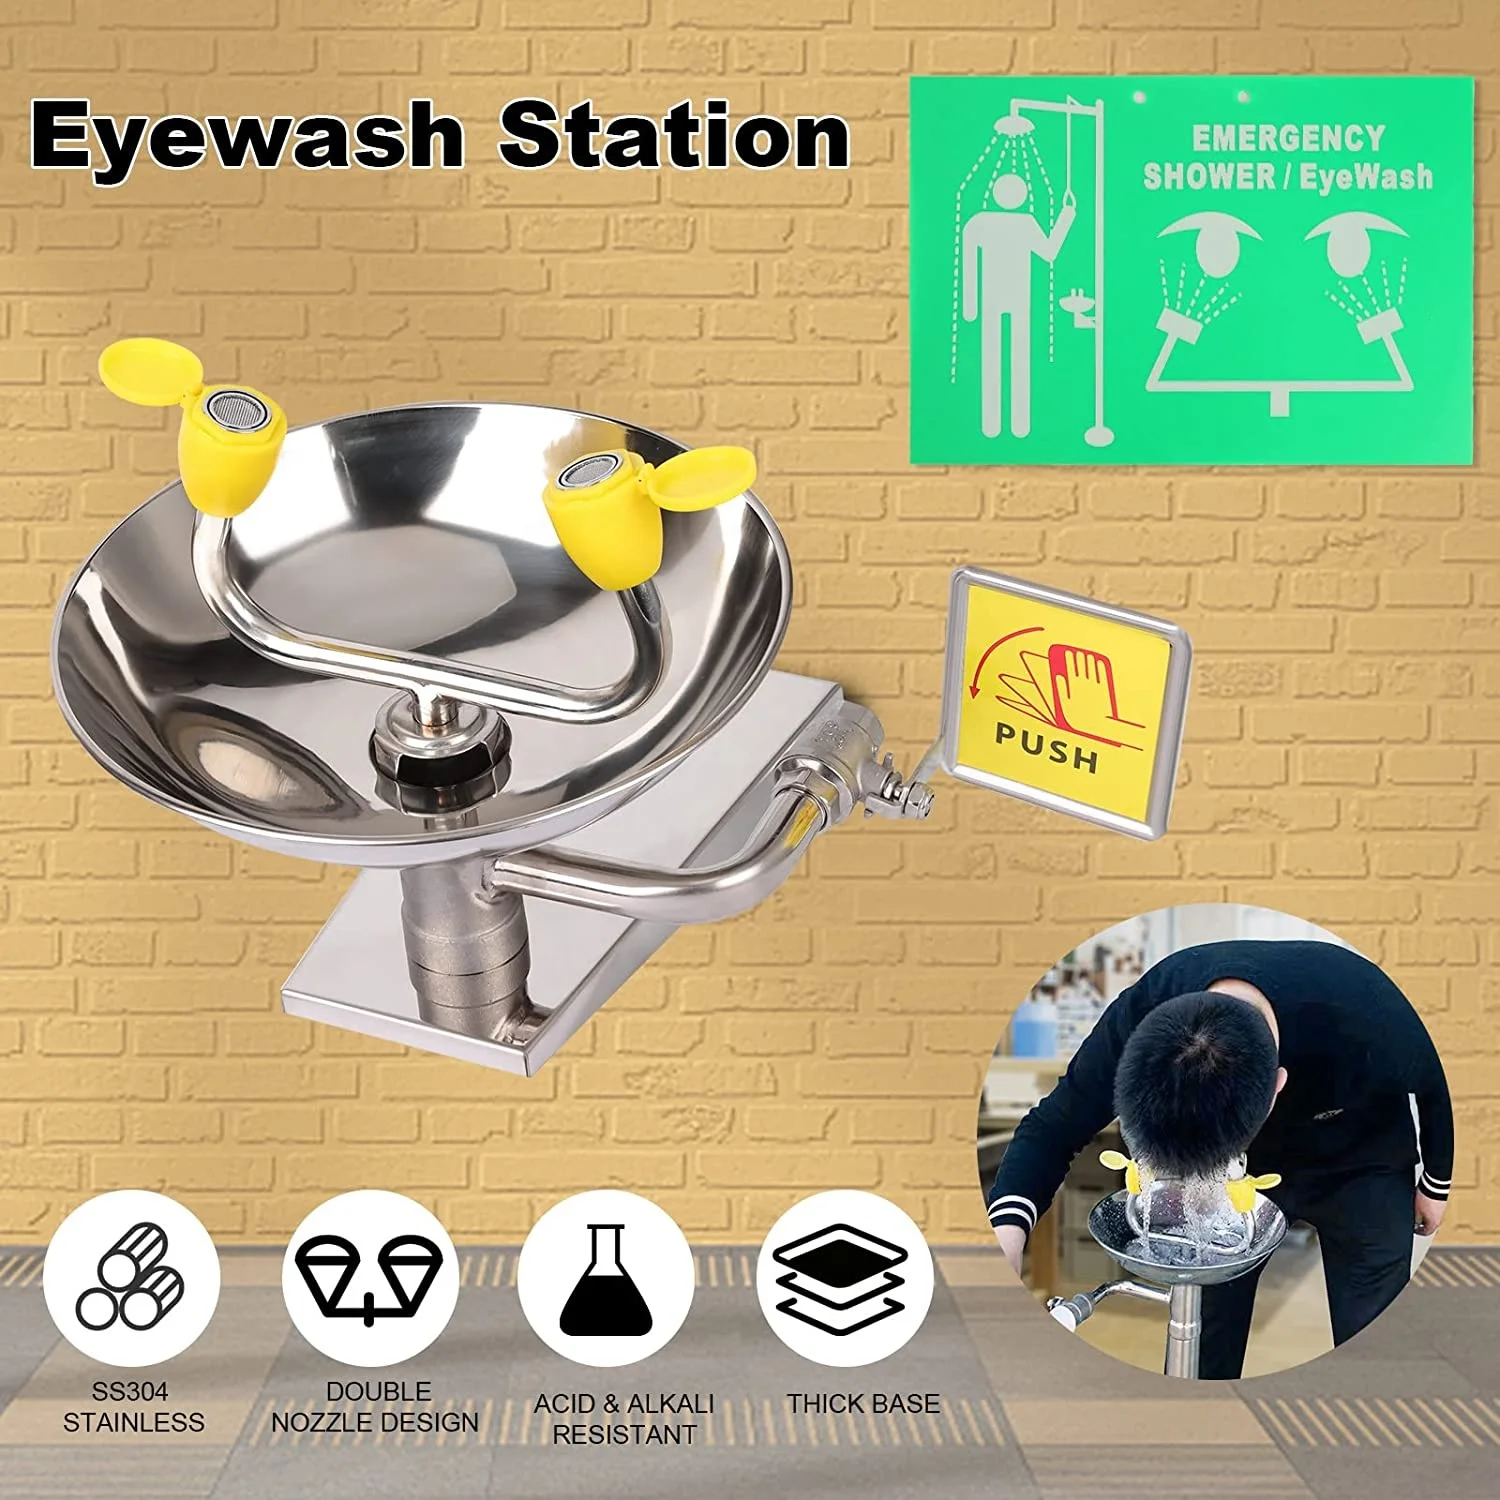 Wall Mount Eyewash Station Eye Wash Manufacturers portable eyewash station